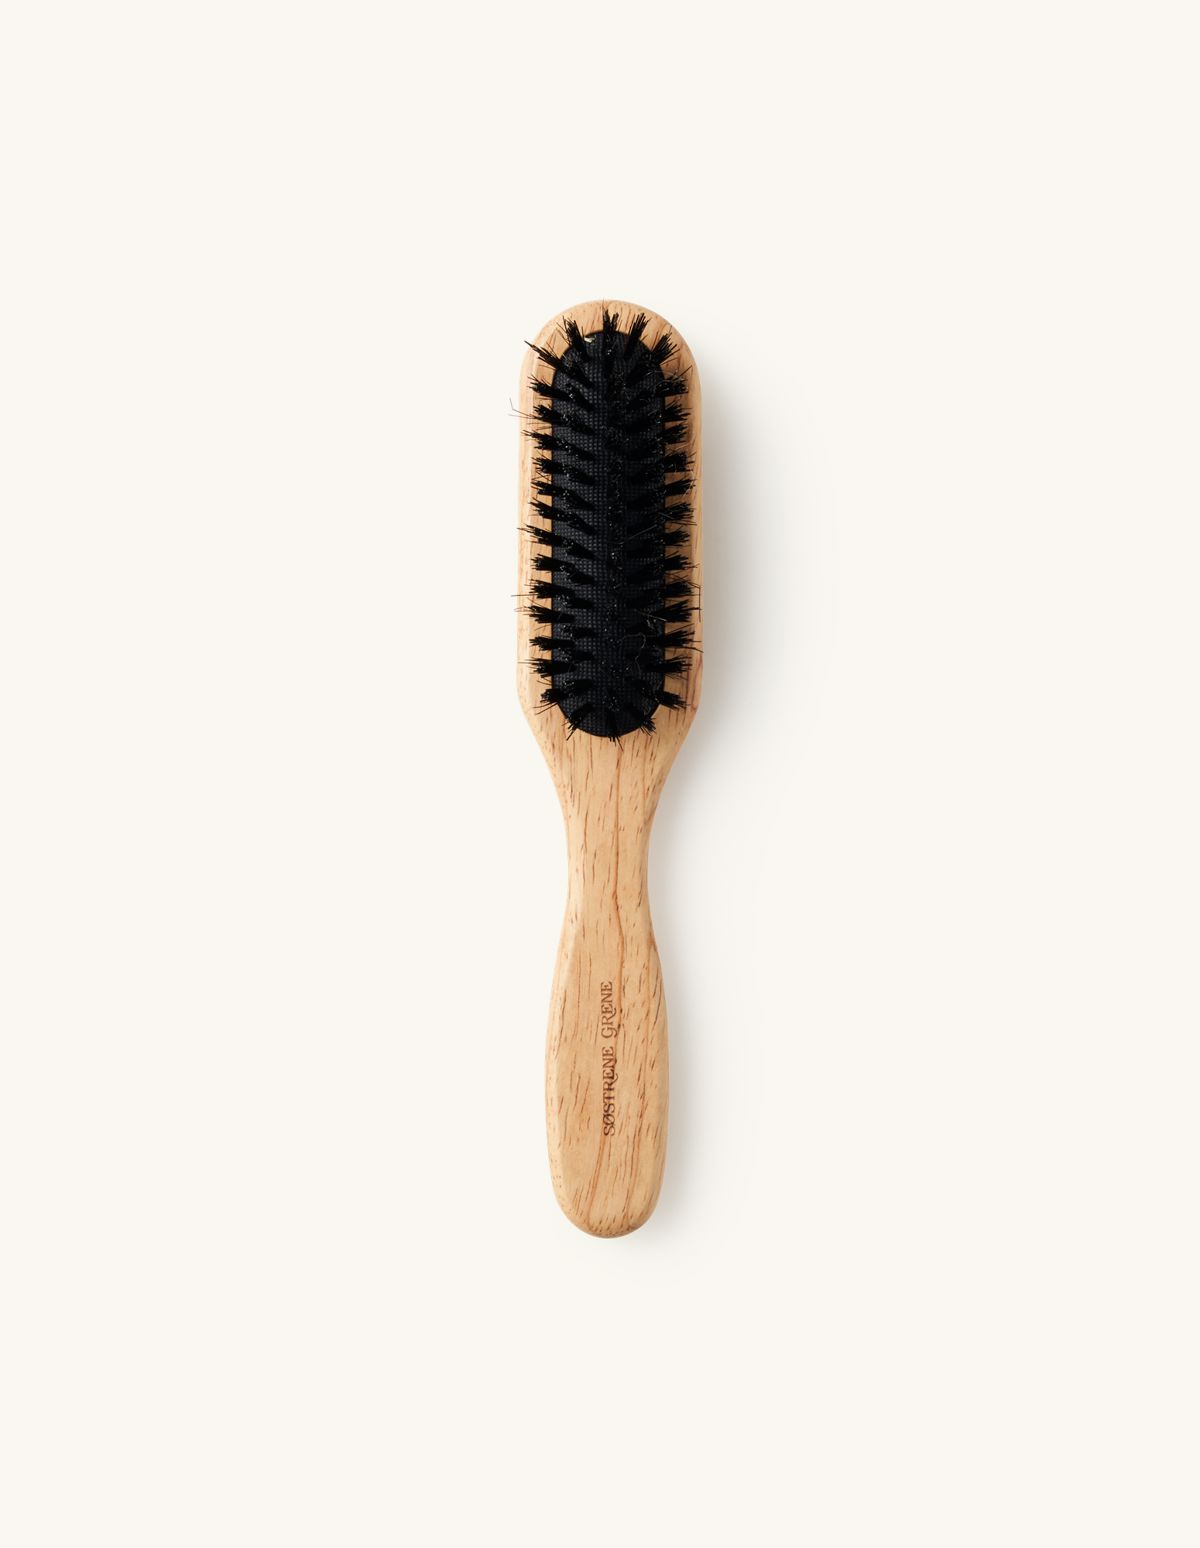 Brosse à cheveux | Bois d’hévéa/poils naturels/nylon. 3,5 x 4,5 x 22 cm. | Søstrene Grene